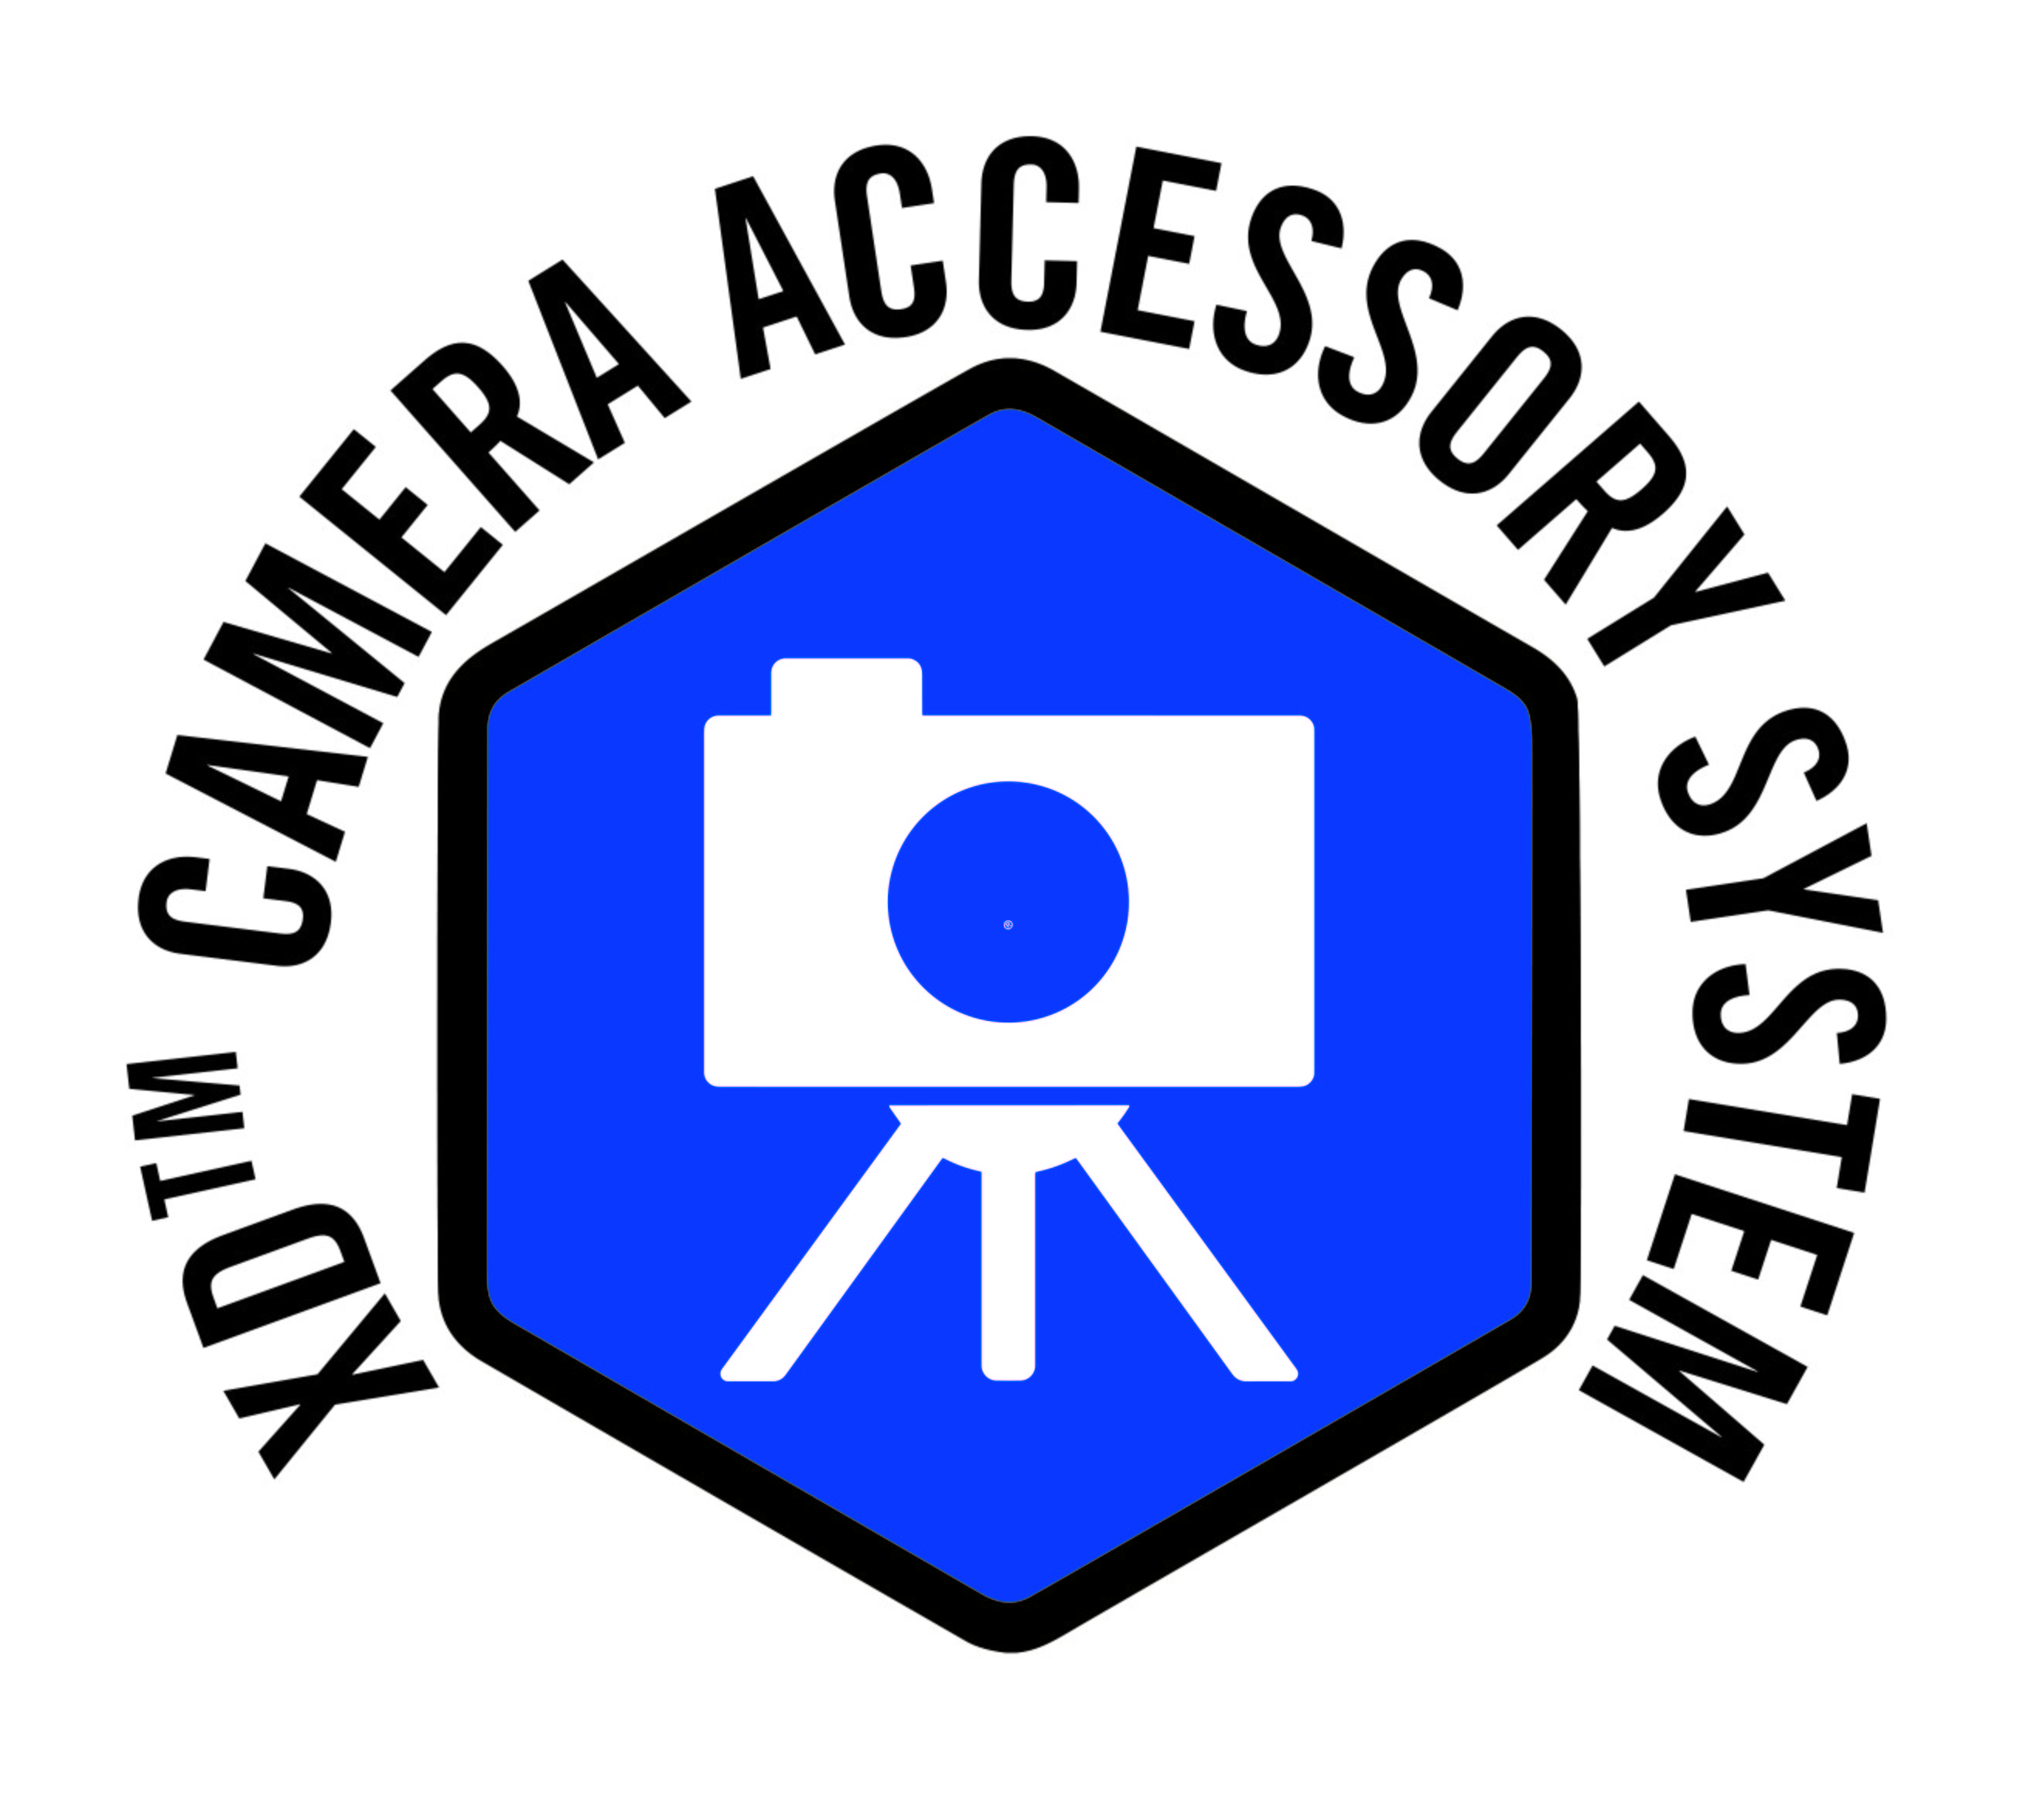 XD Camera Accessory